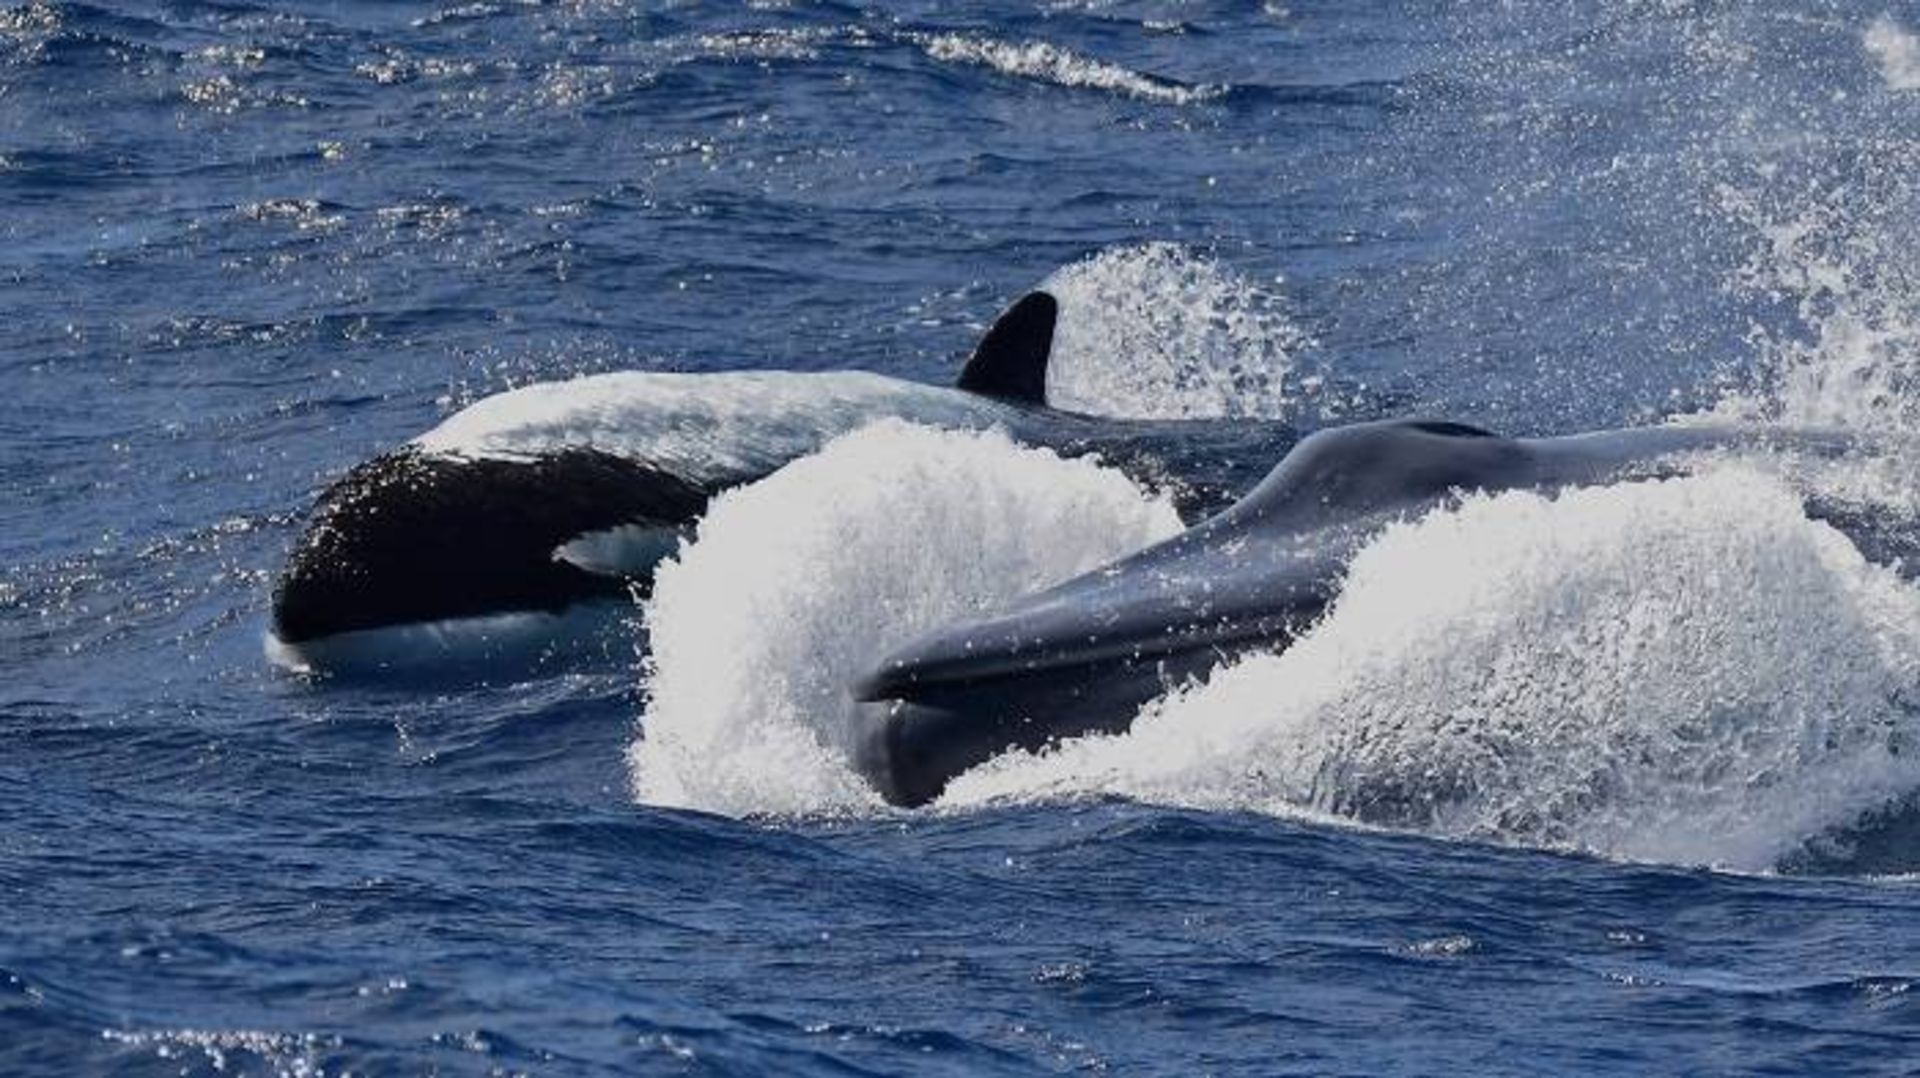 نهنگ قاتل در حال تعقیب نهنگ آبی / Orcas chased blue whale